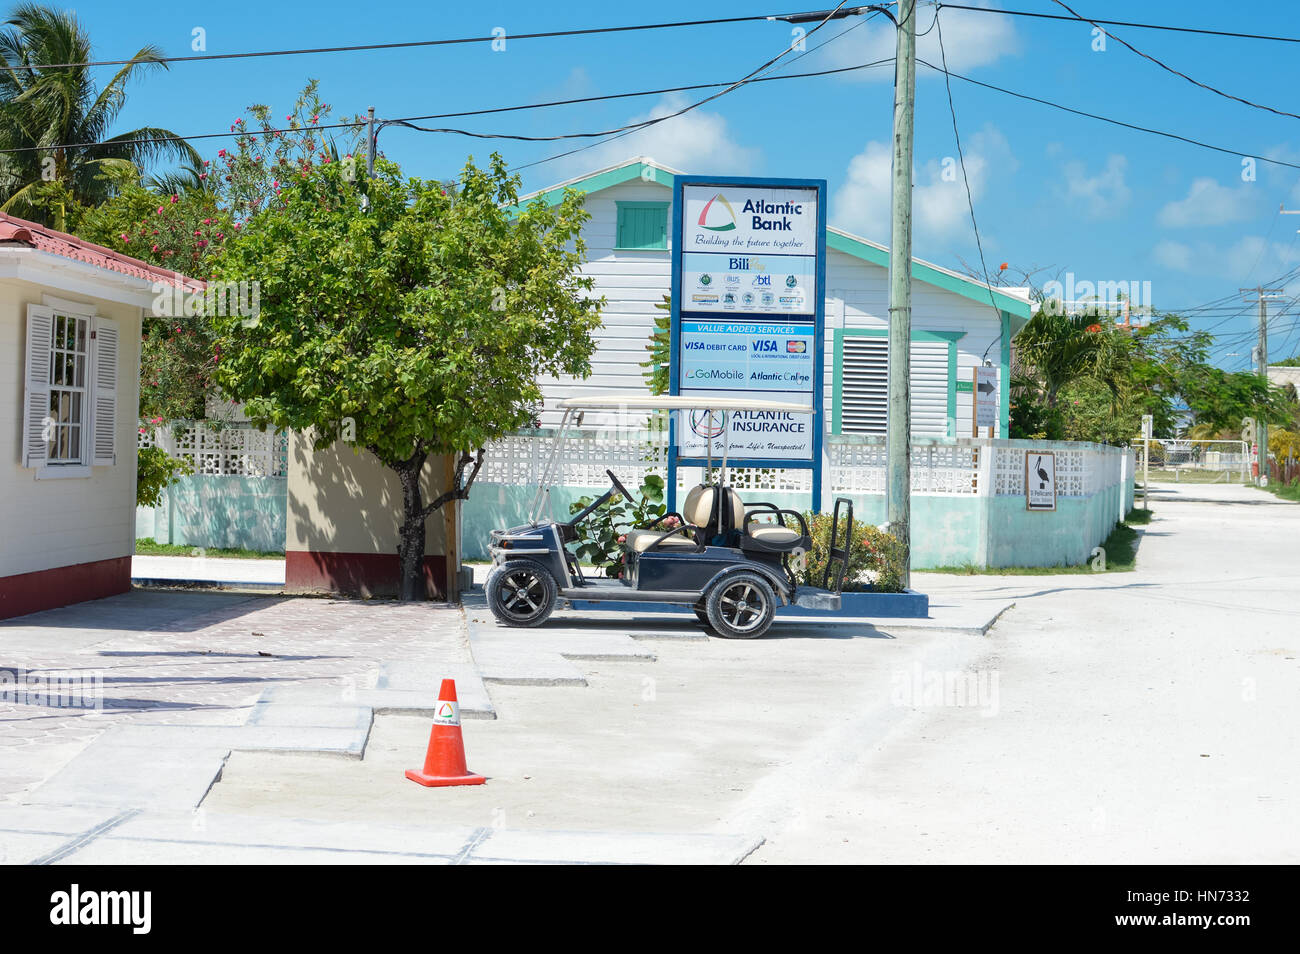 Caye Caulker, Belize – 24. März 2015: Tropische Insel mit weißem Sand, mit Menschen und Unternehmen ist an einem sonnigen Tag am 24. März, 20 gesehen Stockfoto